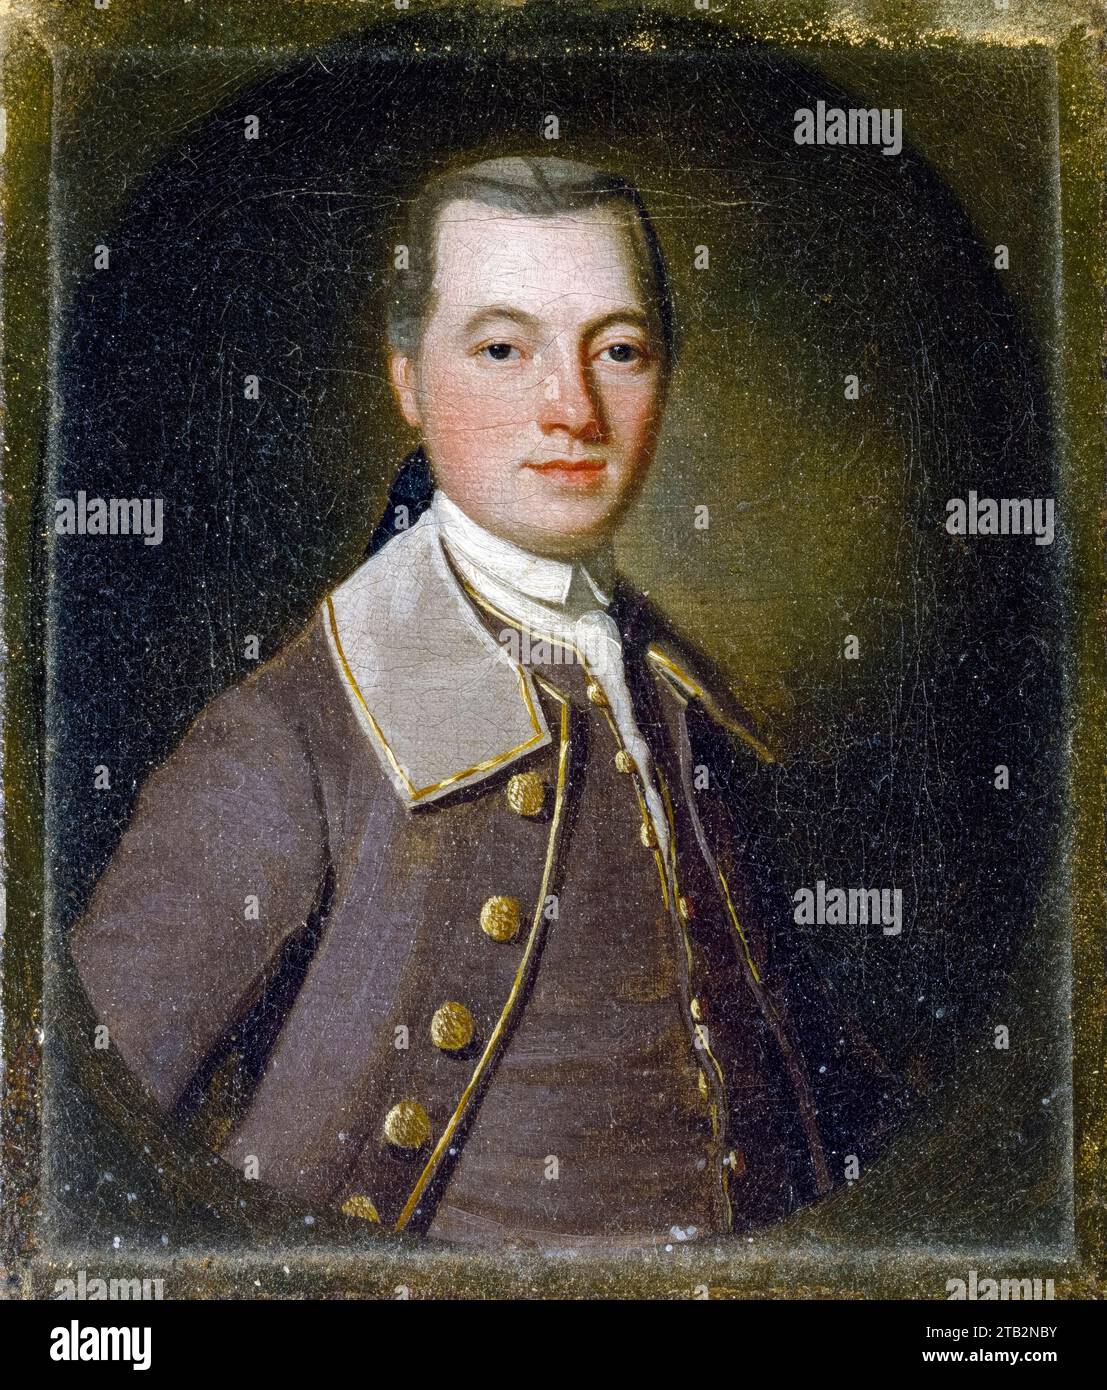 William Watson, portrait à l'huile sur toile de George Romney, 1755-1759 Banque D'Images